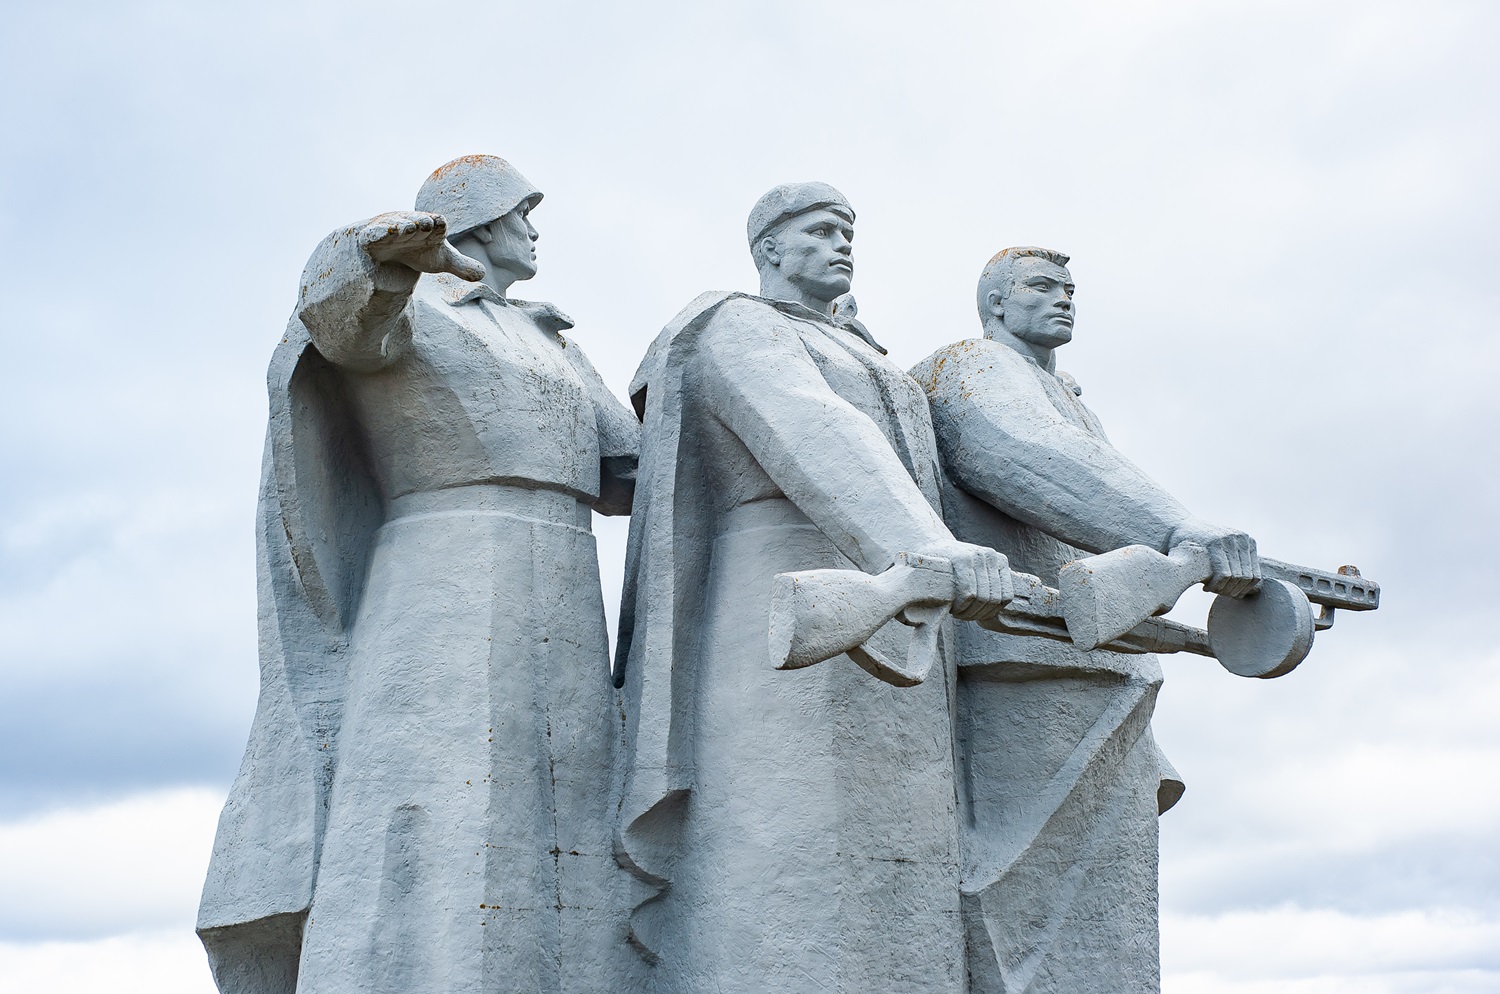 Мемориал, посвященный подвигу Героев-панфиловцев, был открыт в 1975 году у разъезда Дубосеково, где шли бои